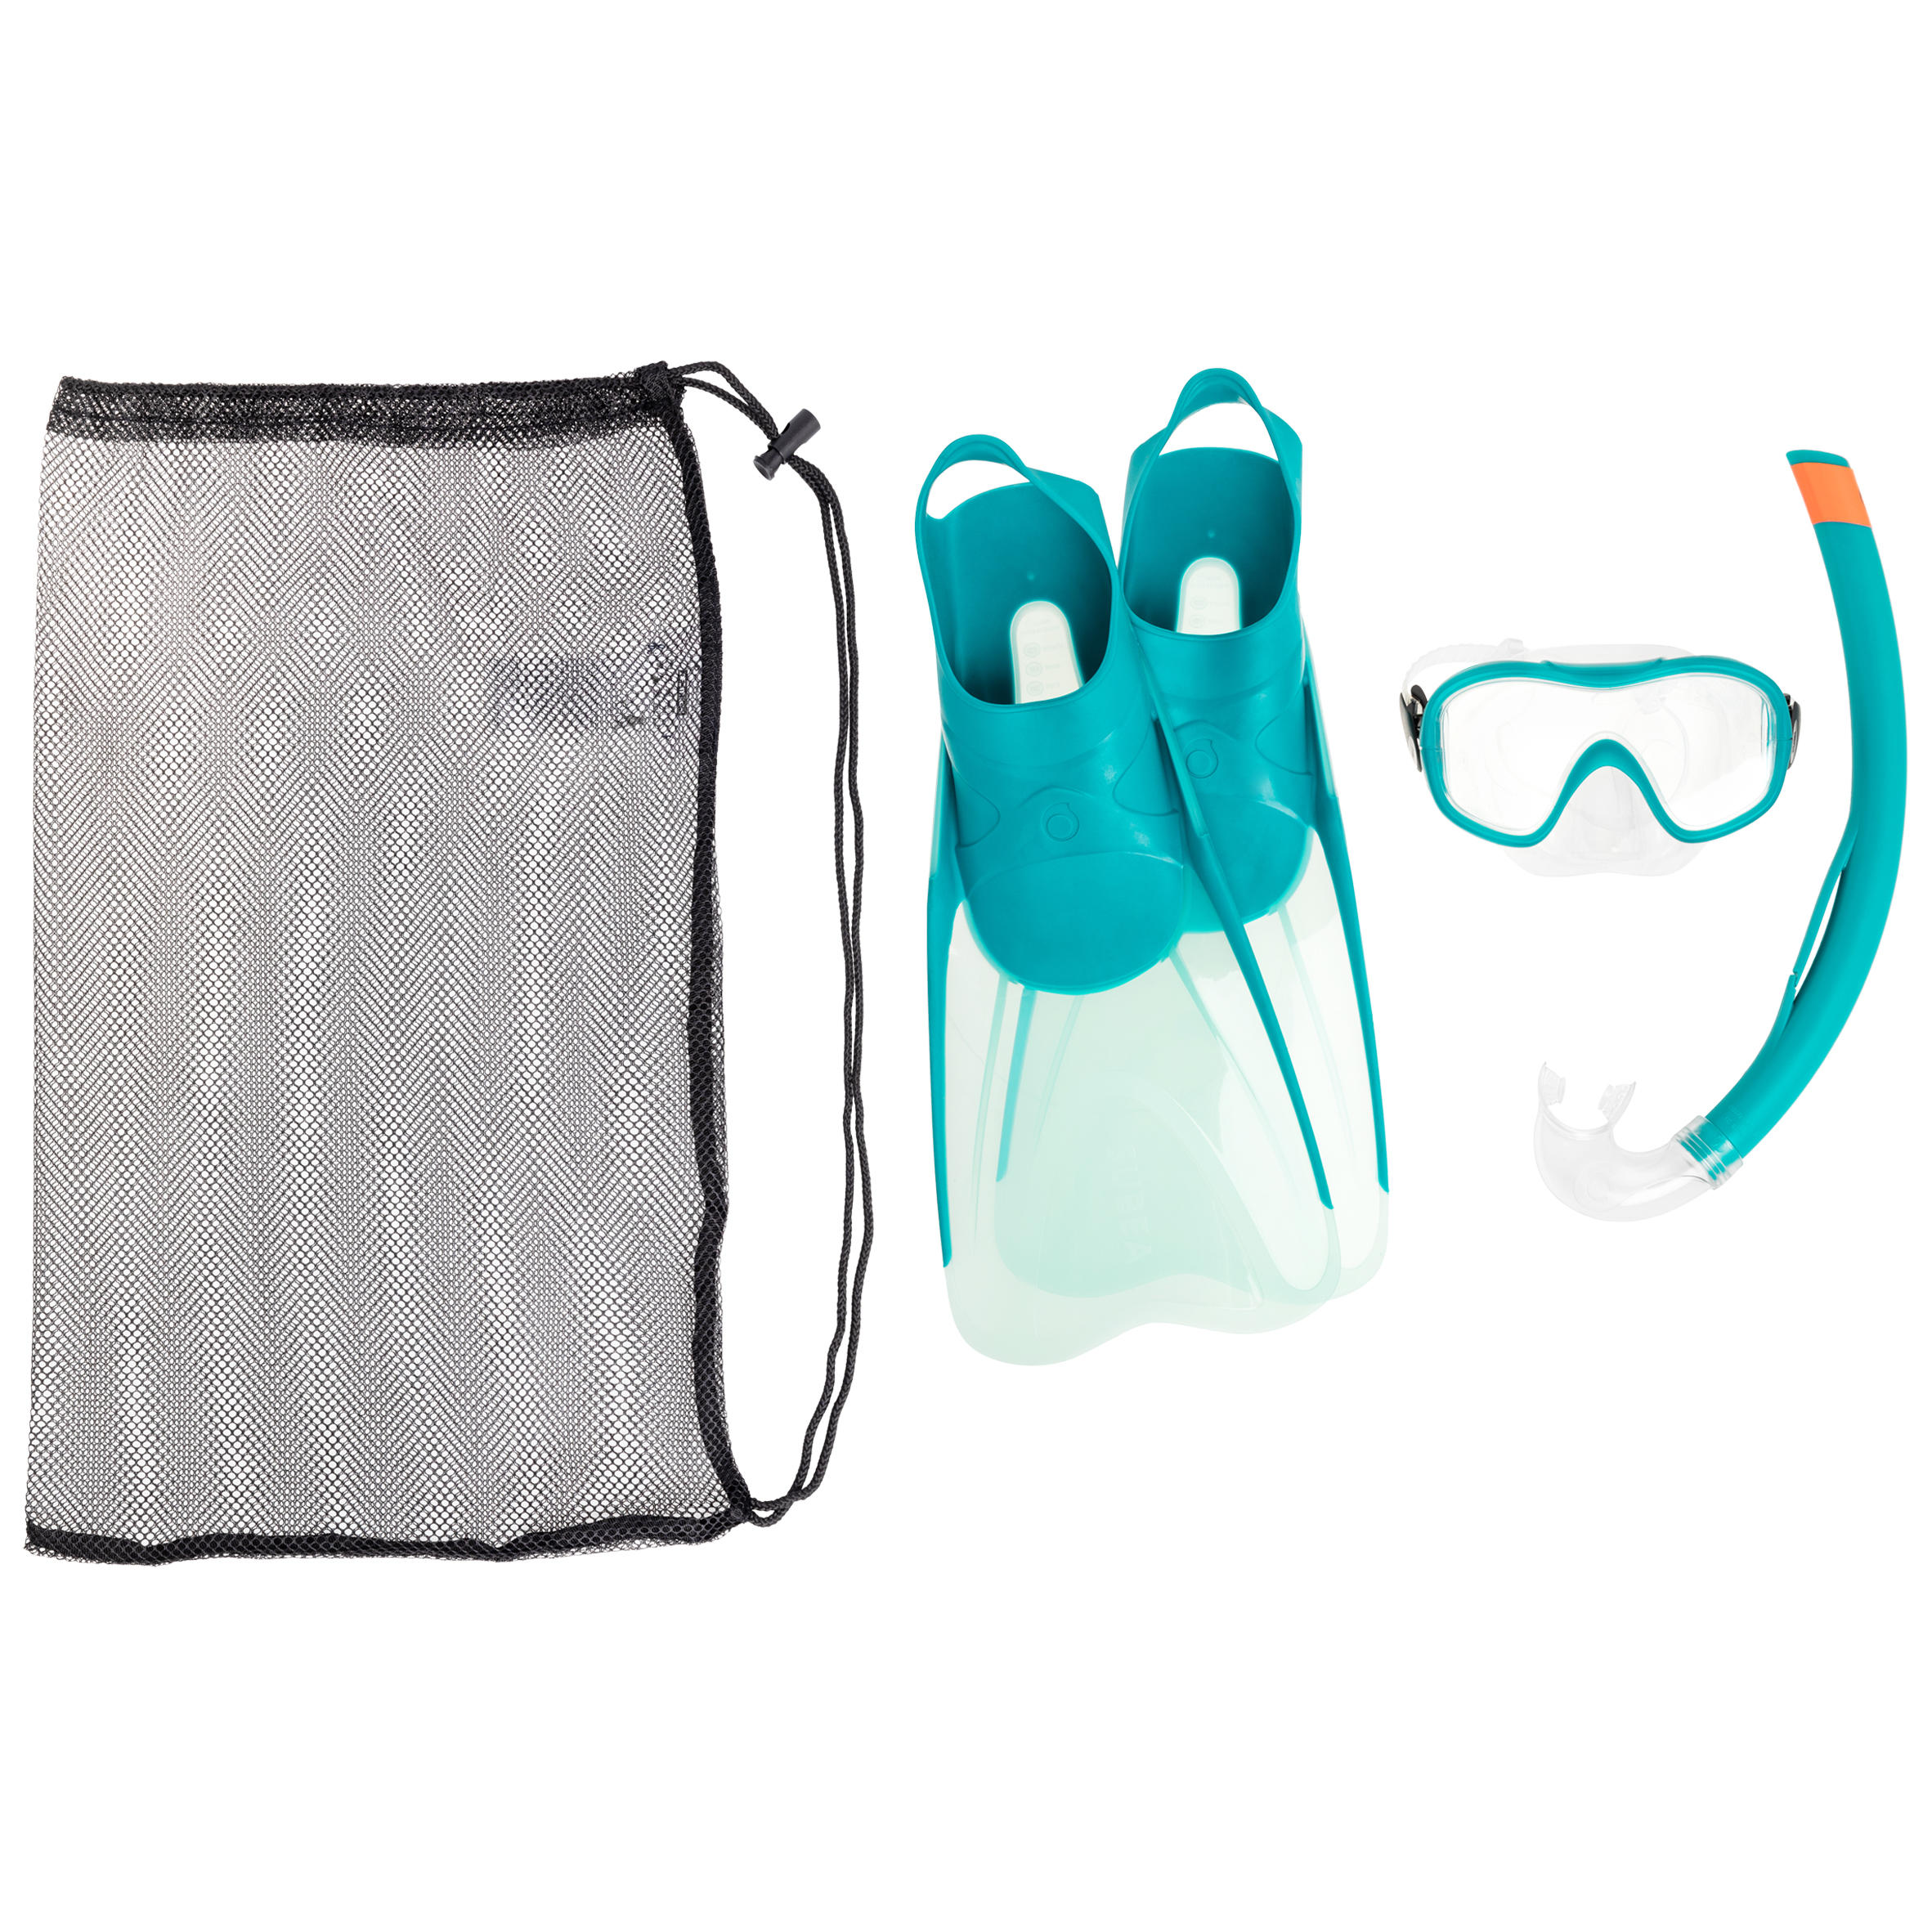 Kit Snorkeling Mască-Tub- Labe de Înot SNK 500 Turcoaz Adulți La Oferta Online decathlon imagine La Oferta Online